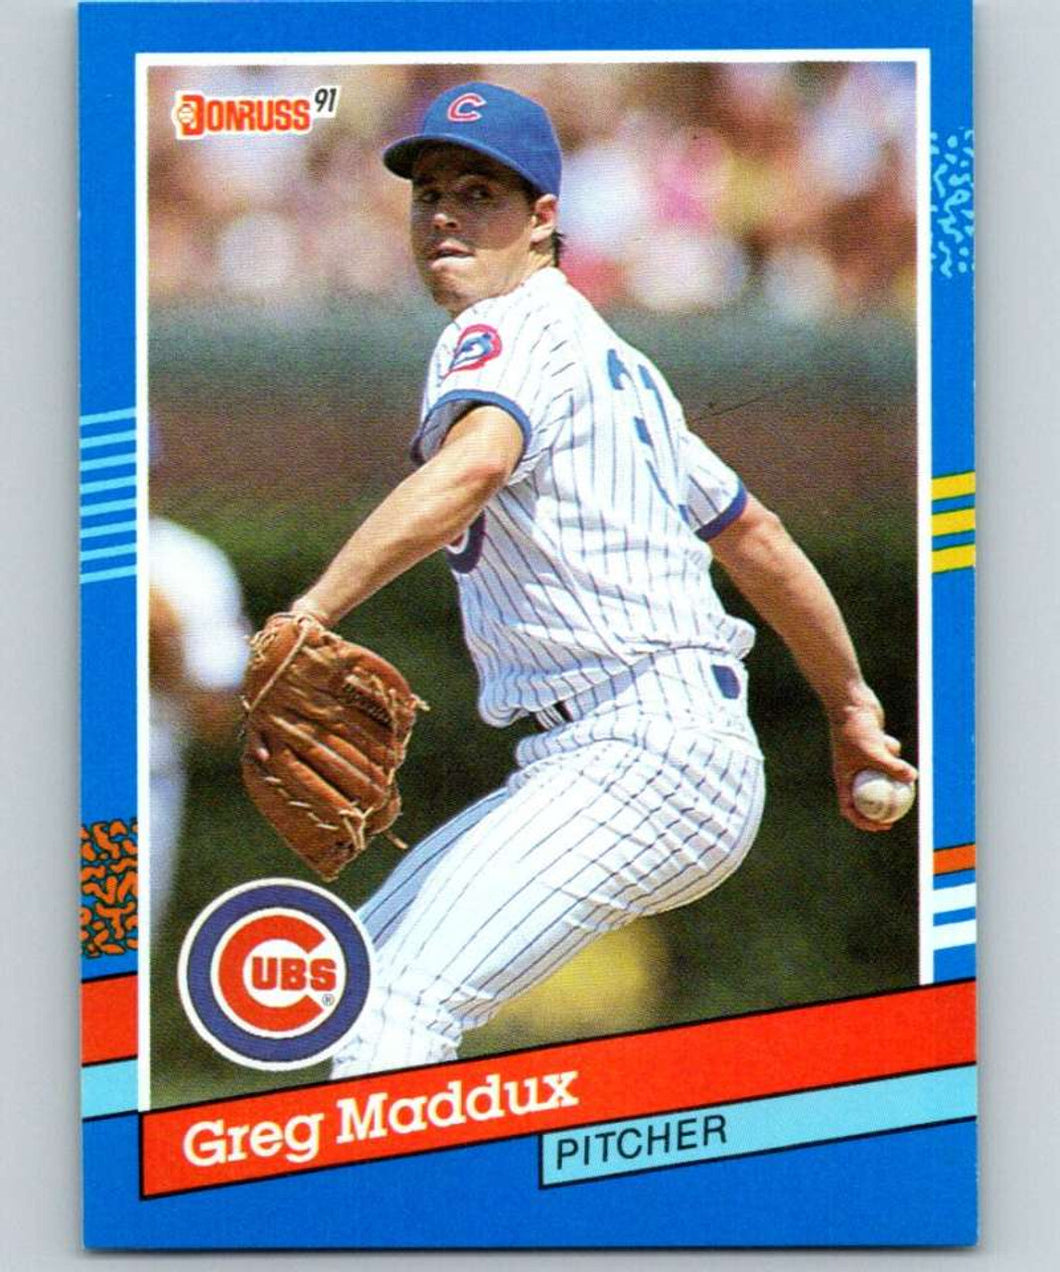 1991 Donruss Blue Greg Maddux #374 Chicago Cubs